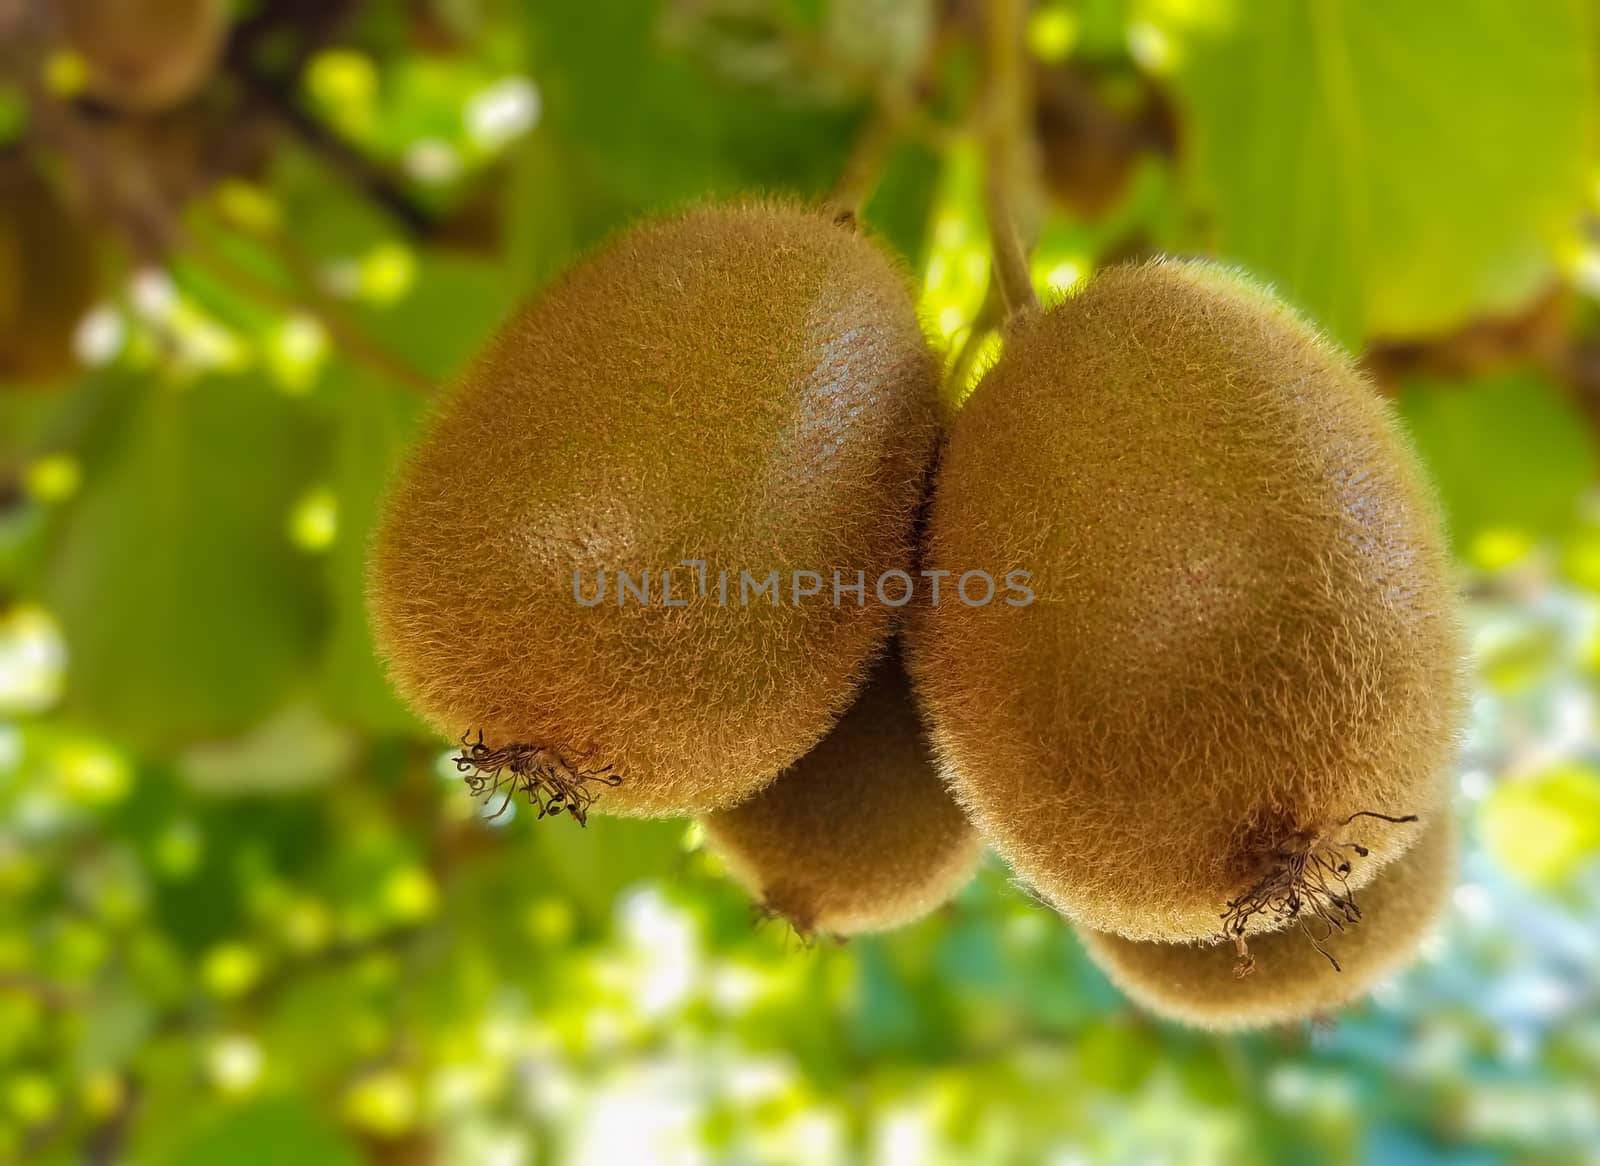 Kiwi Fruit by whitechild